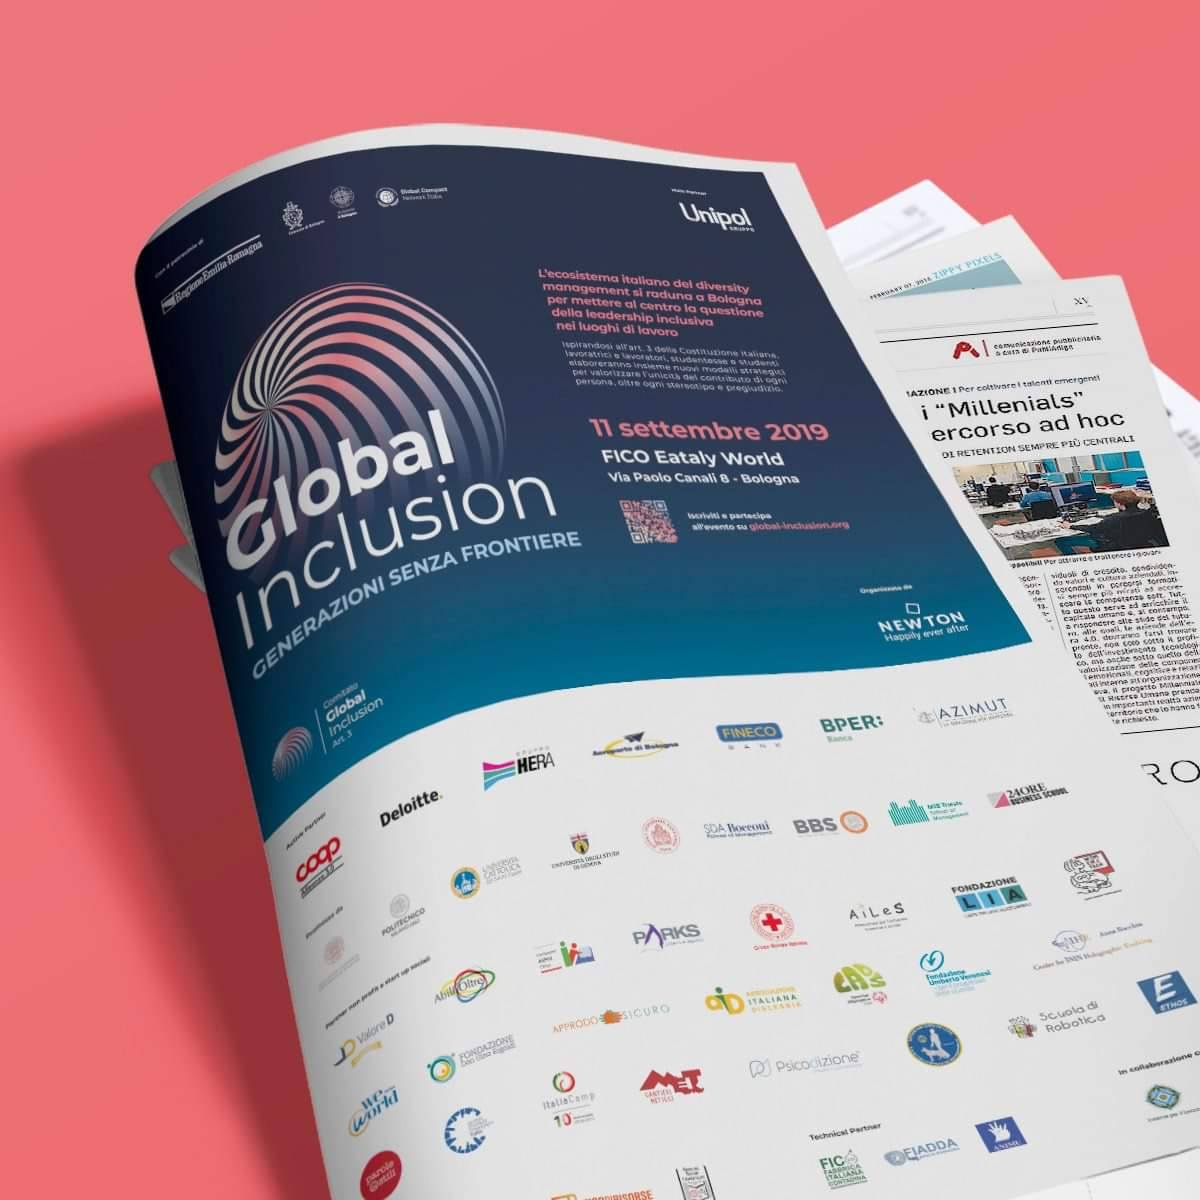 Pagina di foglio di giornale con pubblicità dell'evento Global Inclusion e loghi delle realtà che partecipano